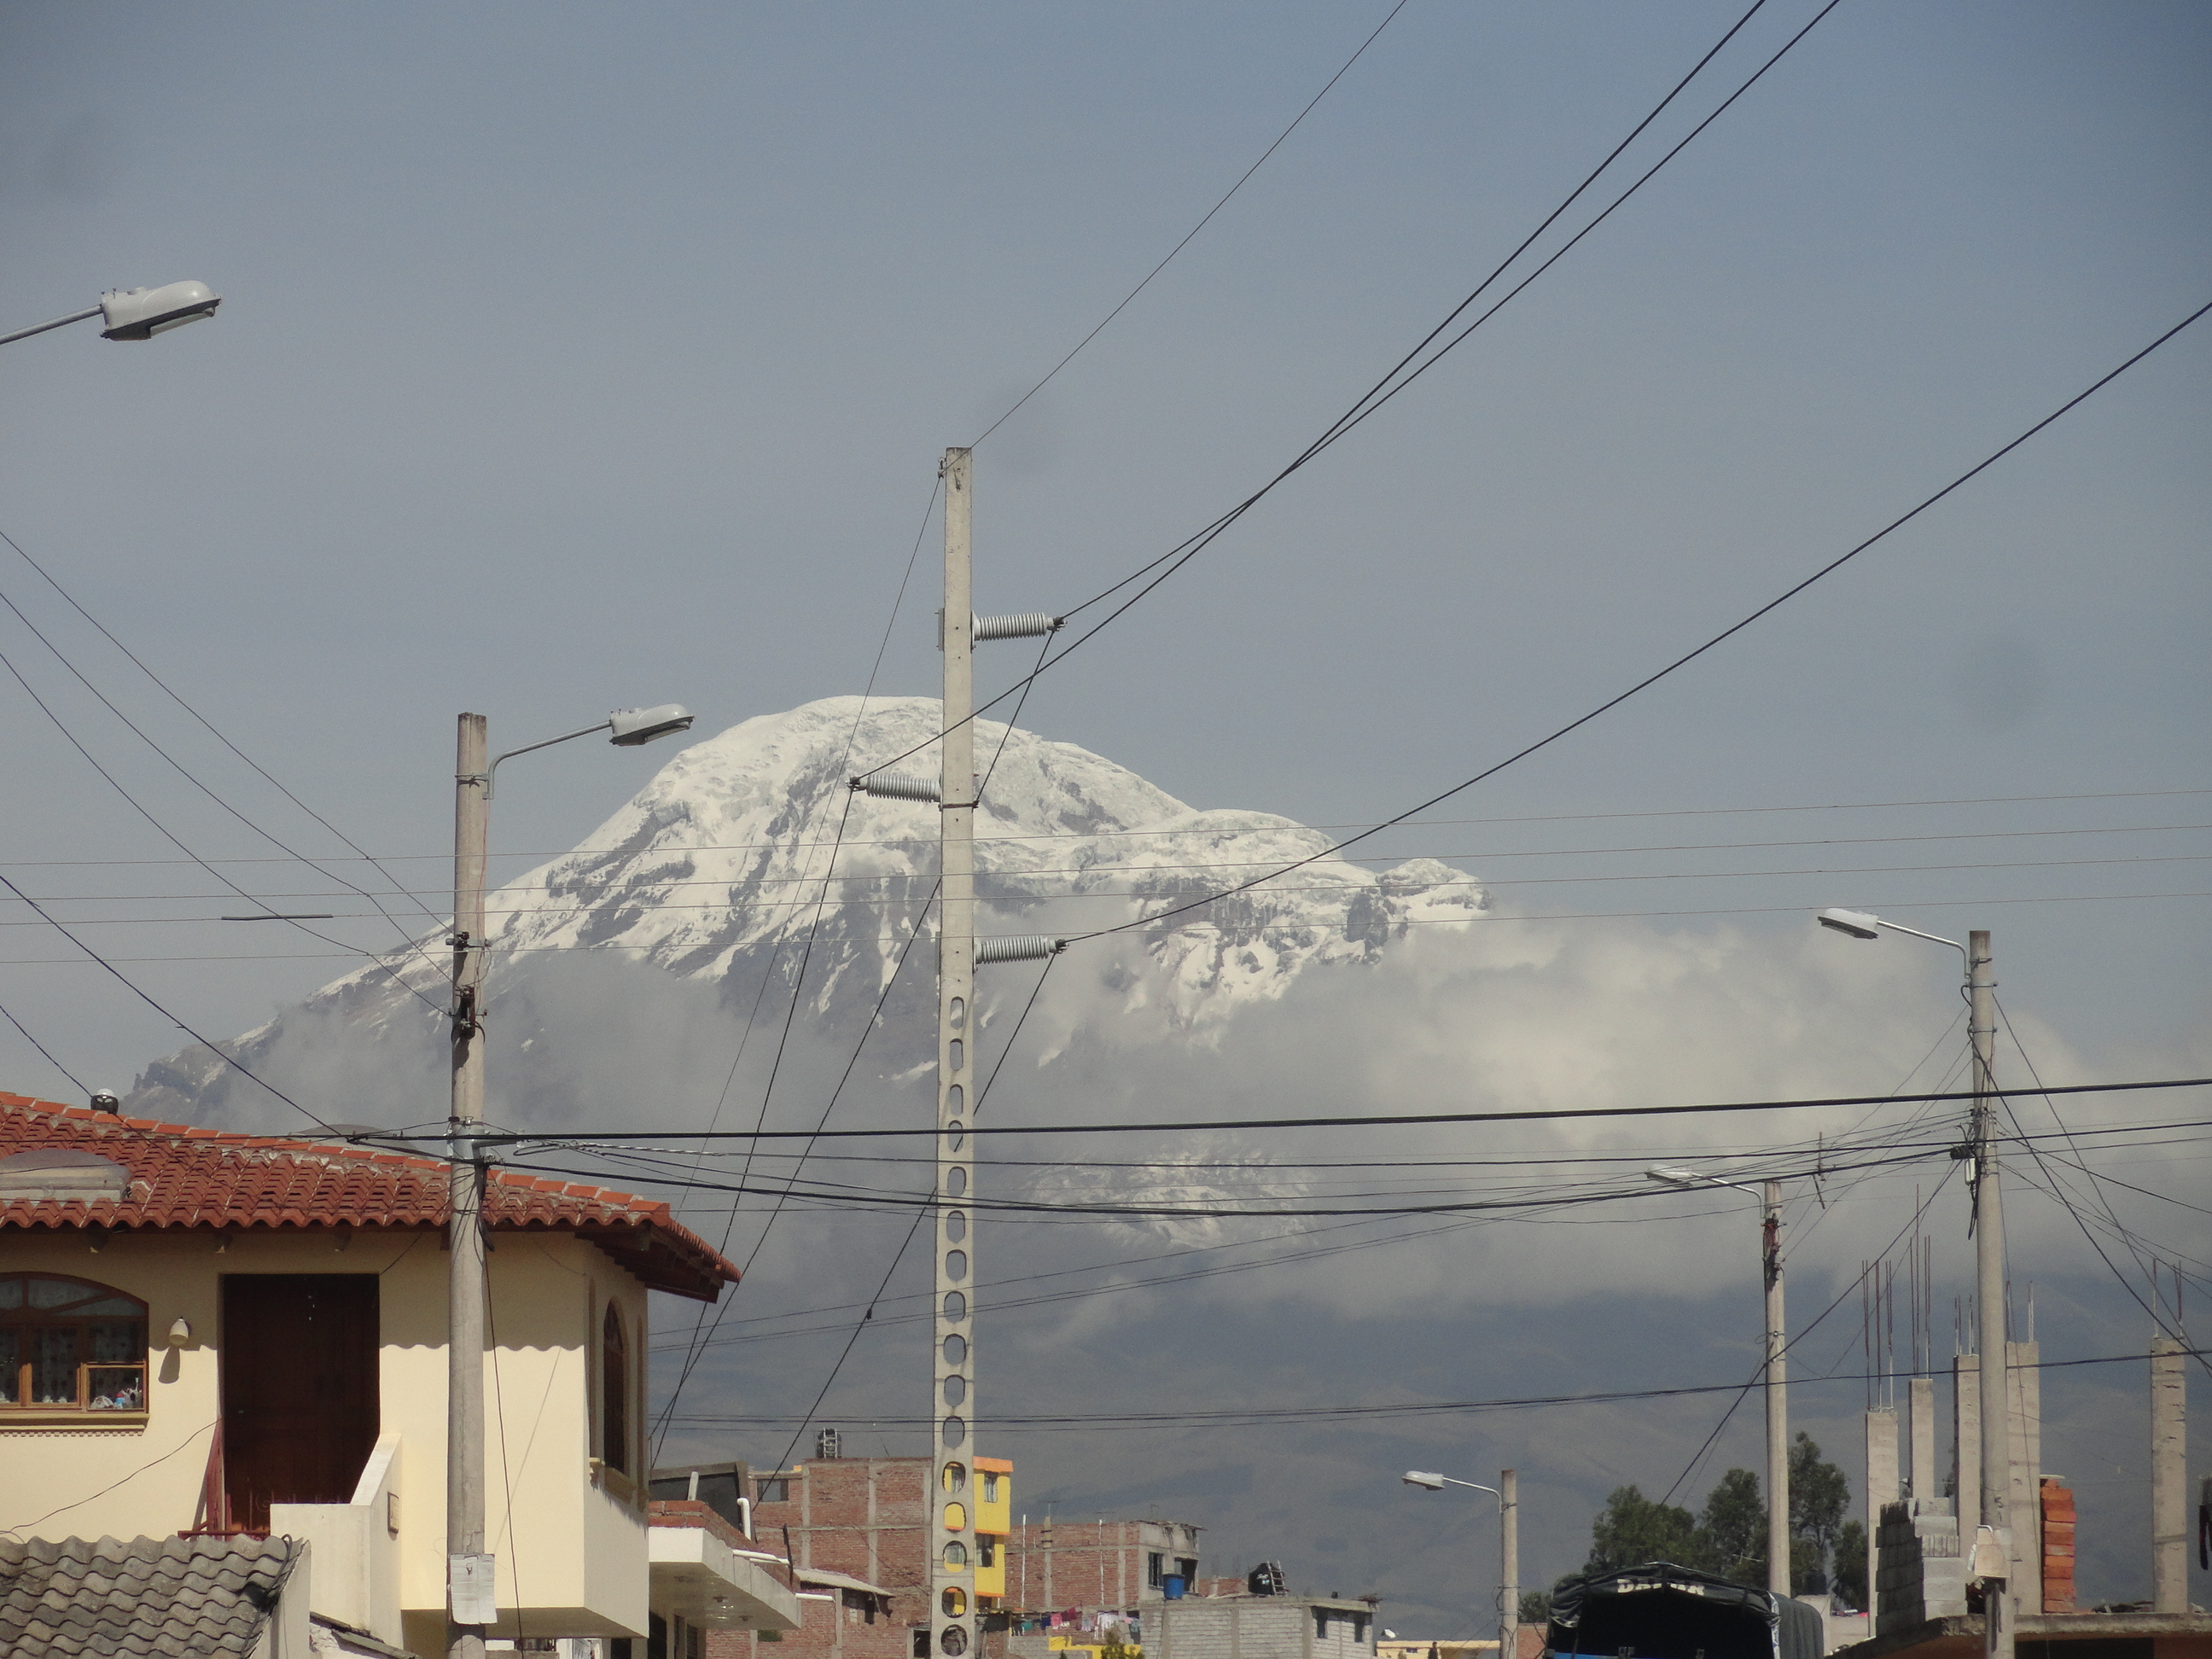 Foto: el Chimborazo - Riobamba (Chimborazo), Ecuador